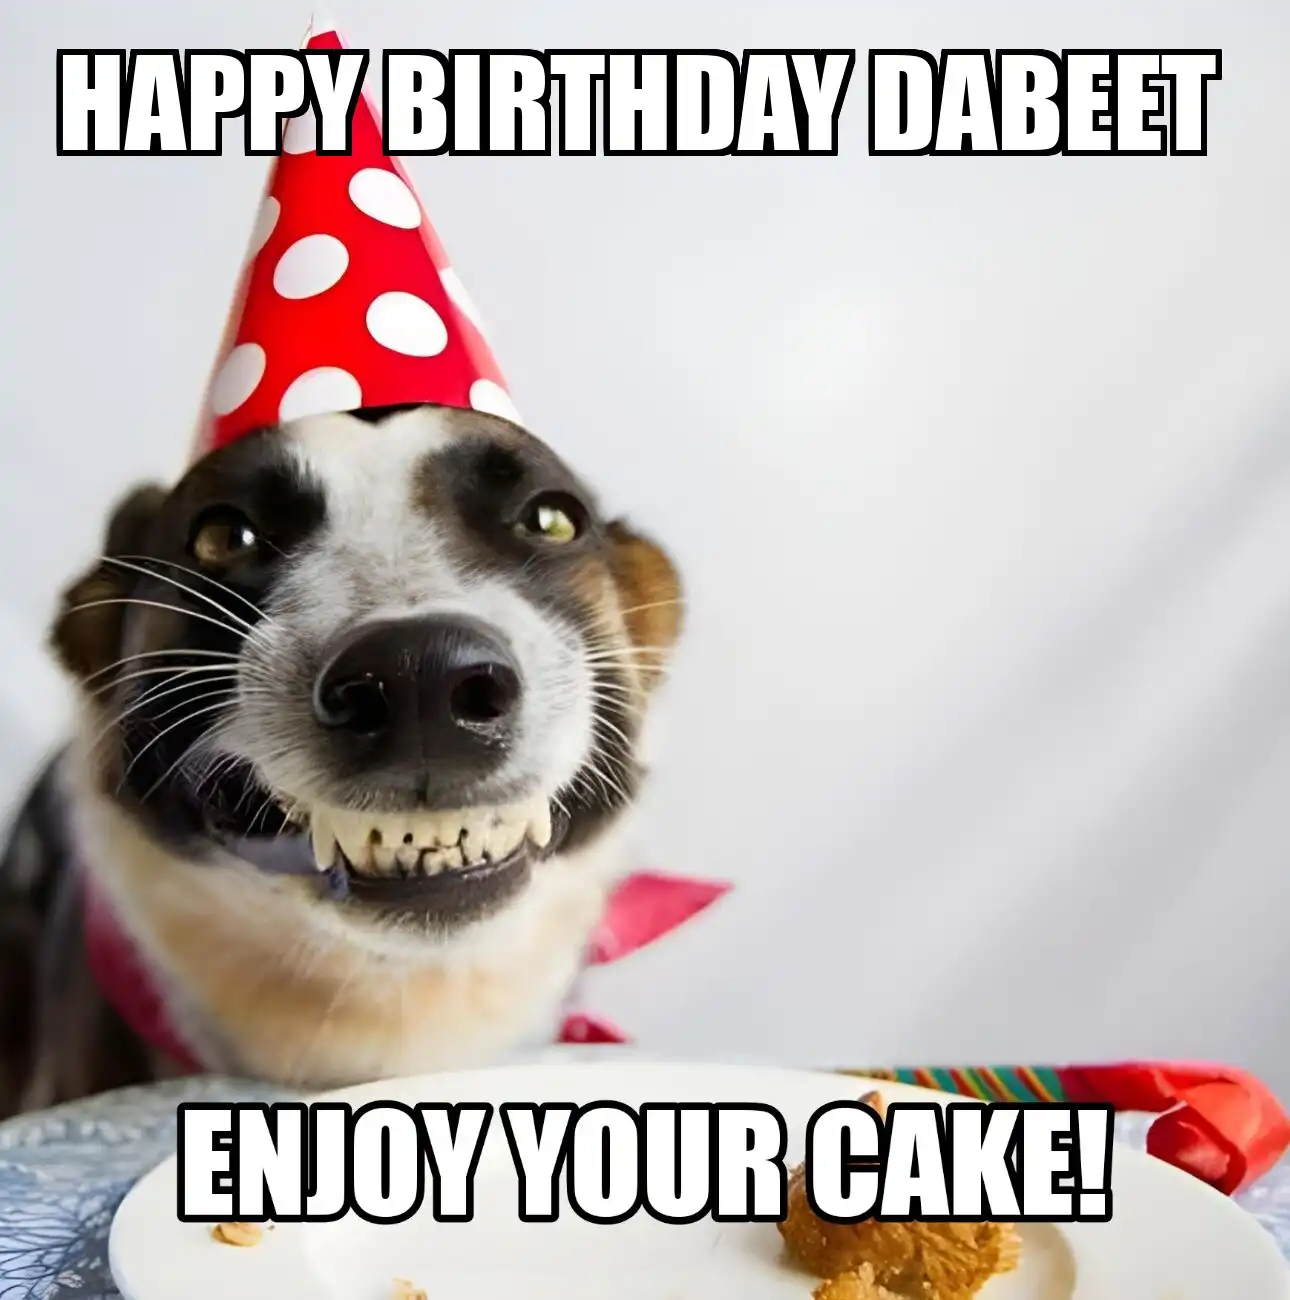 Happy Birthday Dabeet Enjoy Your Cake Dog Meme